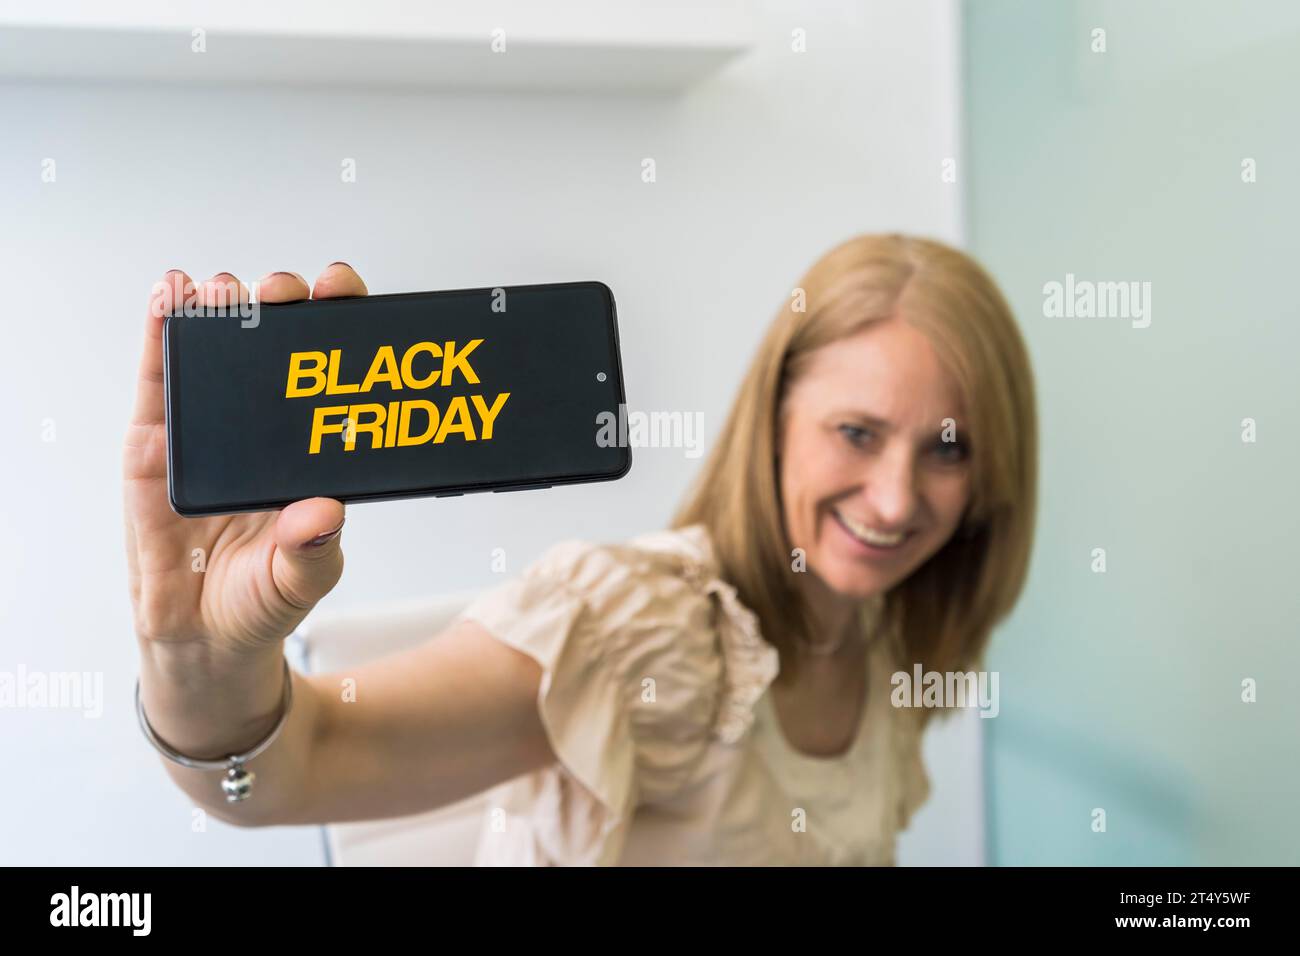 Belle femme mi-adulte montrant un smartphone avec publicité Black Friday sur l'écran Banque D'Images